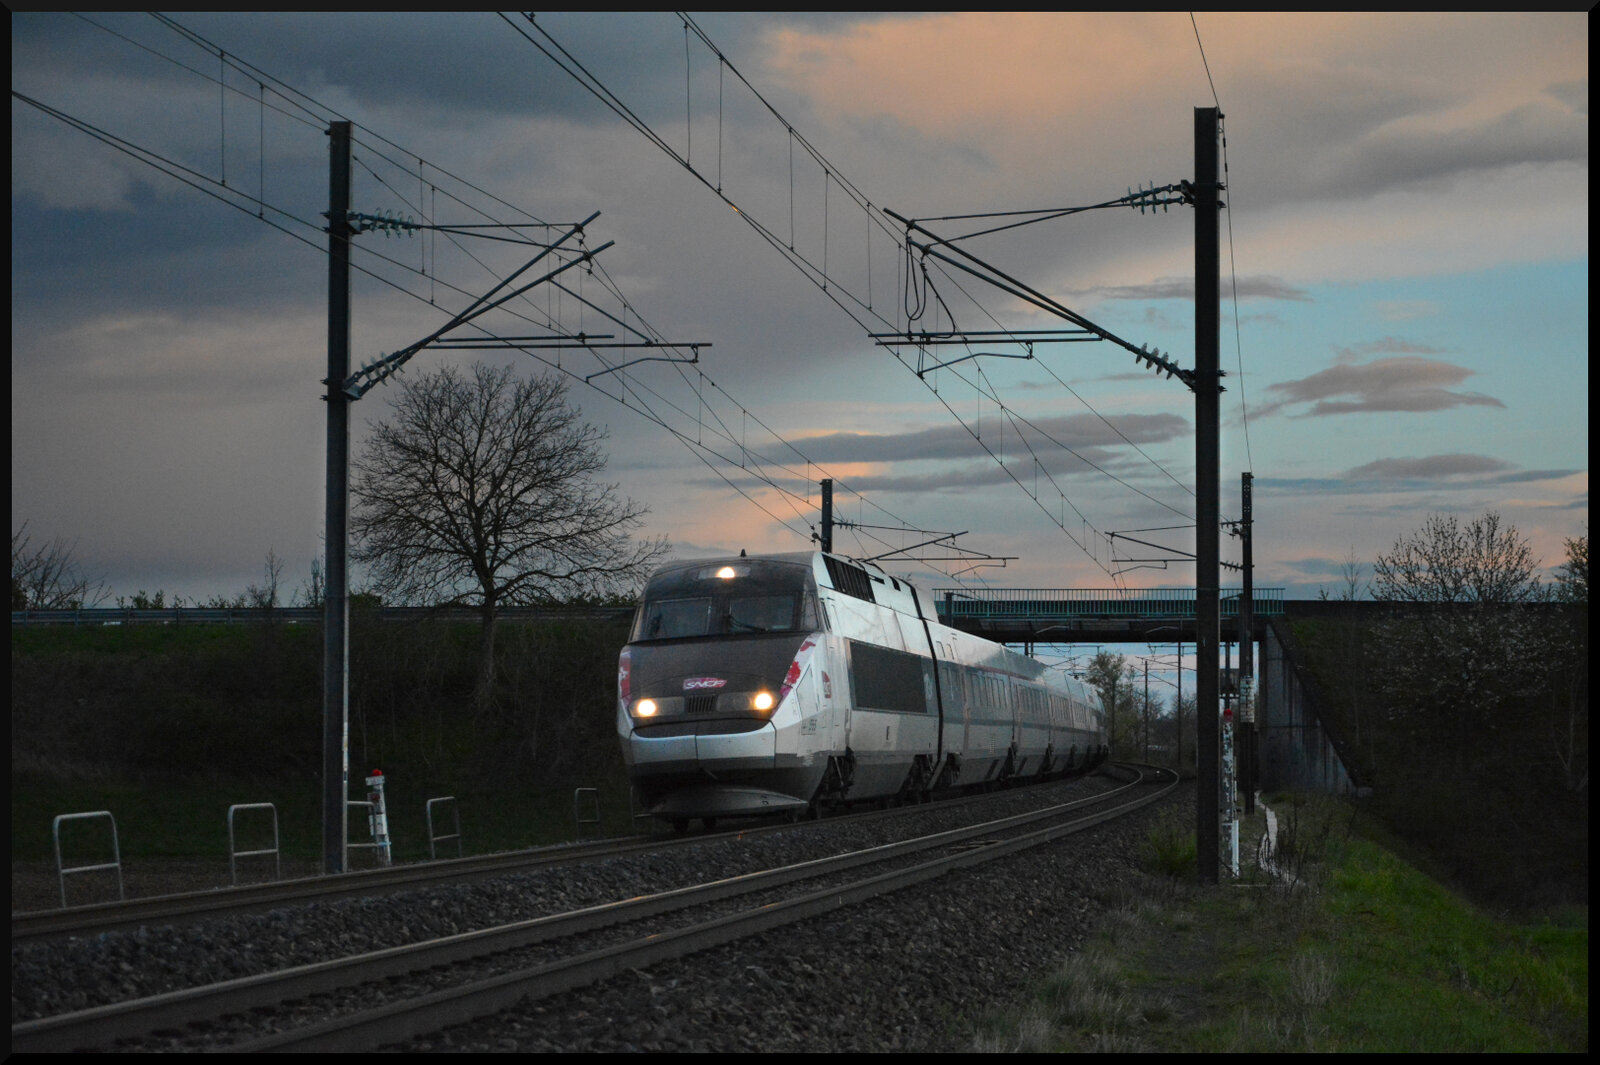 TGV 2204 Montpellier Saint-Roch - Strasbourg & TGV 5500 Montpellier Saint-Roch - Metz Ville kommen am 01.04.2024 kurz nach Sonnenuntergang bei Ostheim (Oschta) im Elsass mit 220 km/h unter der Straßenbrücke hervor.